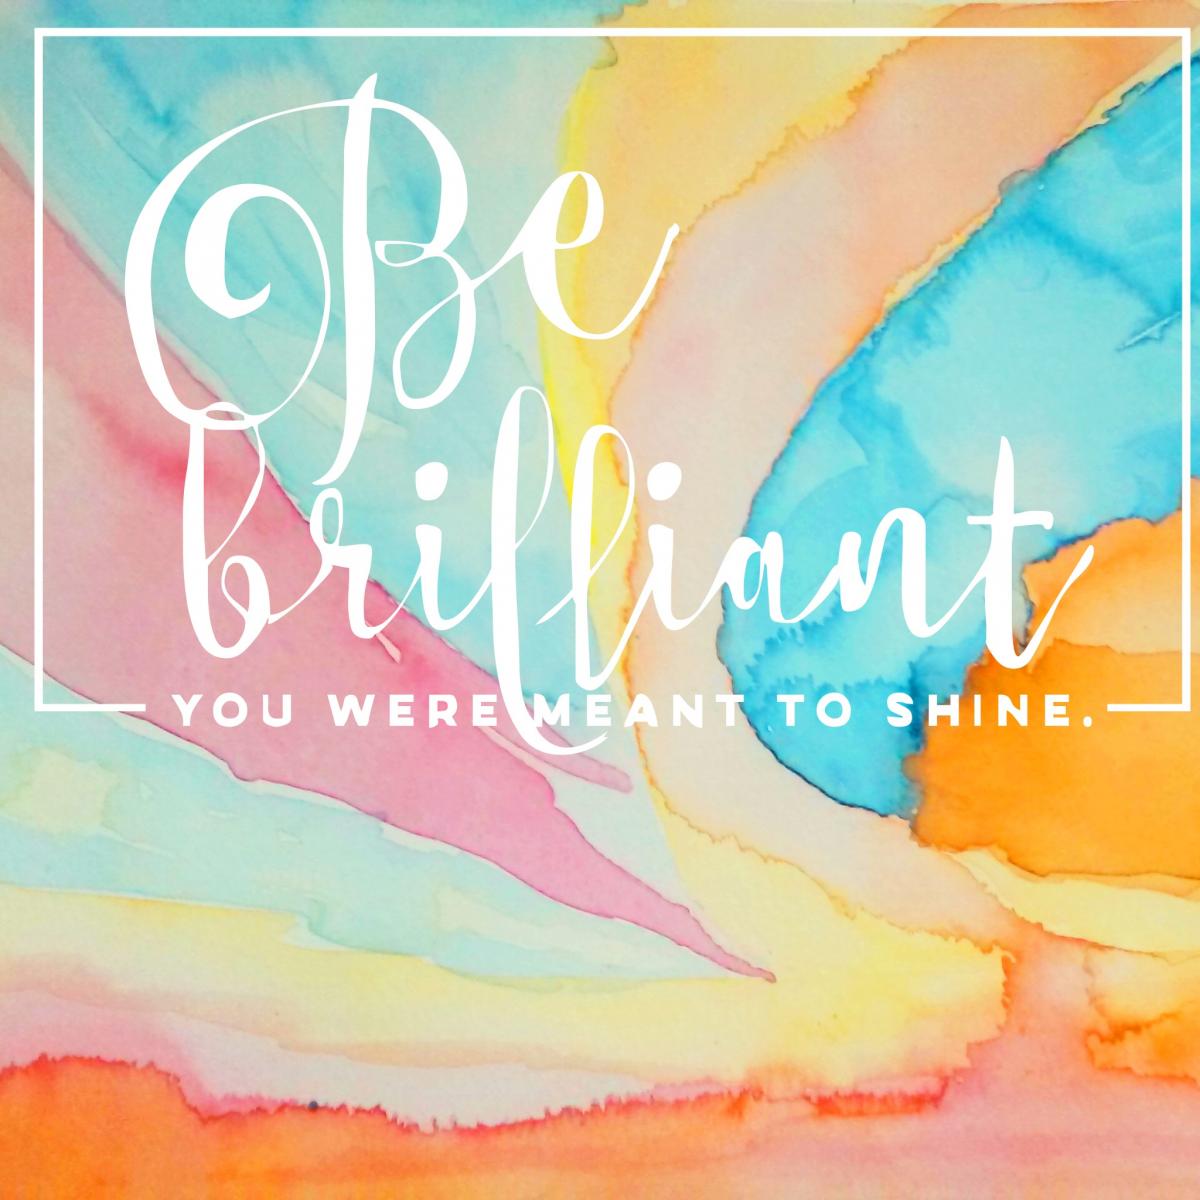 Be brilliant.